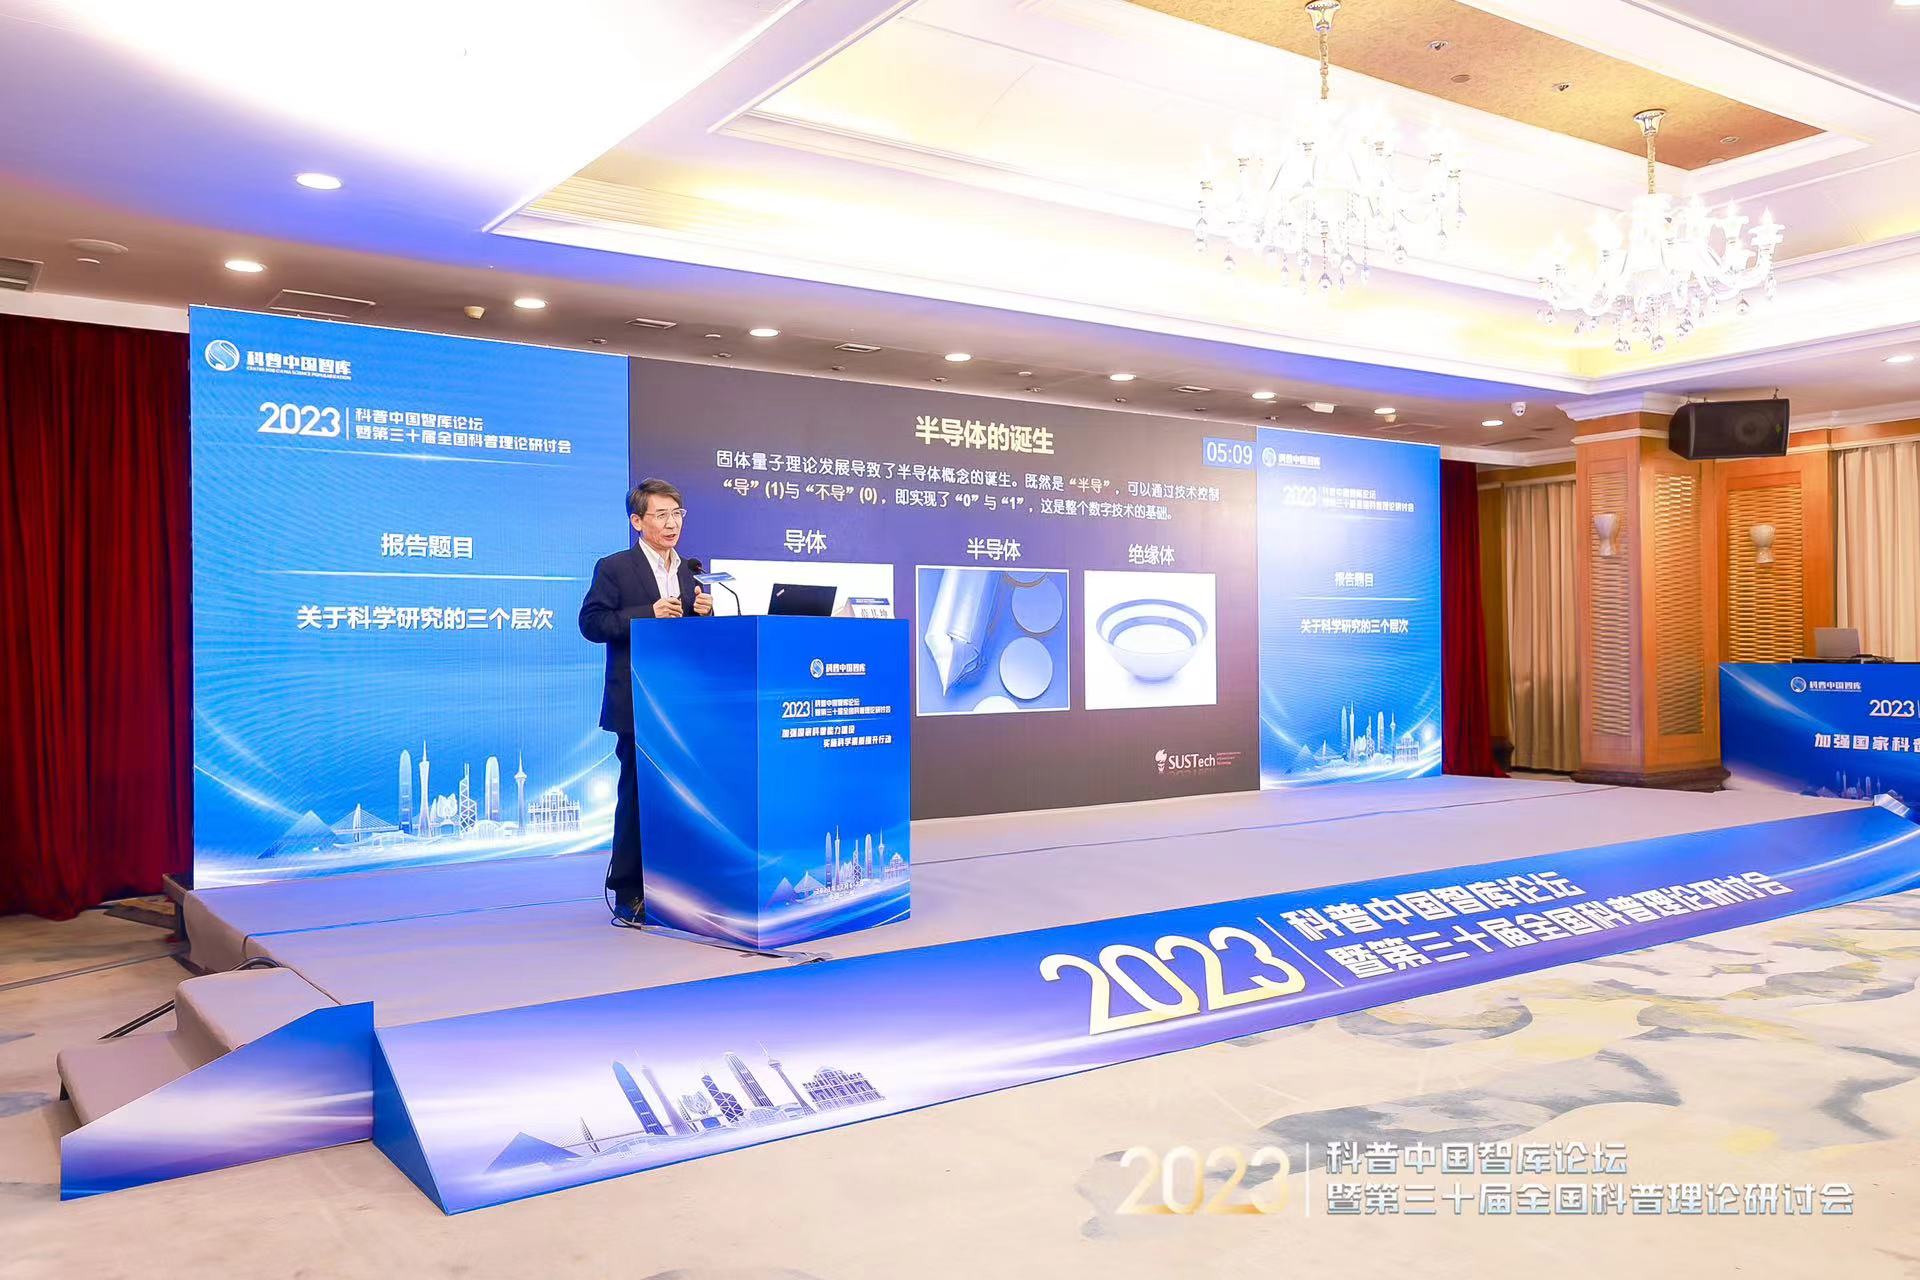 2023年科普中国智库论坛暨第三十届全国科普理论研讨会在广州举办